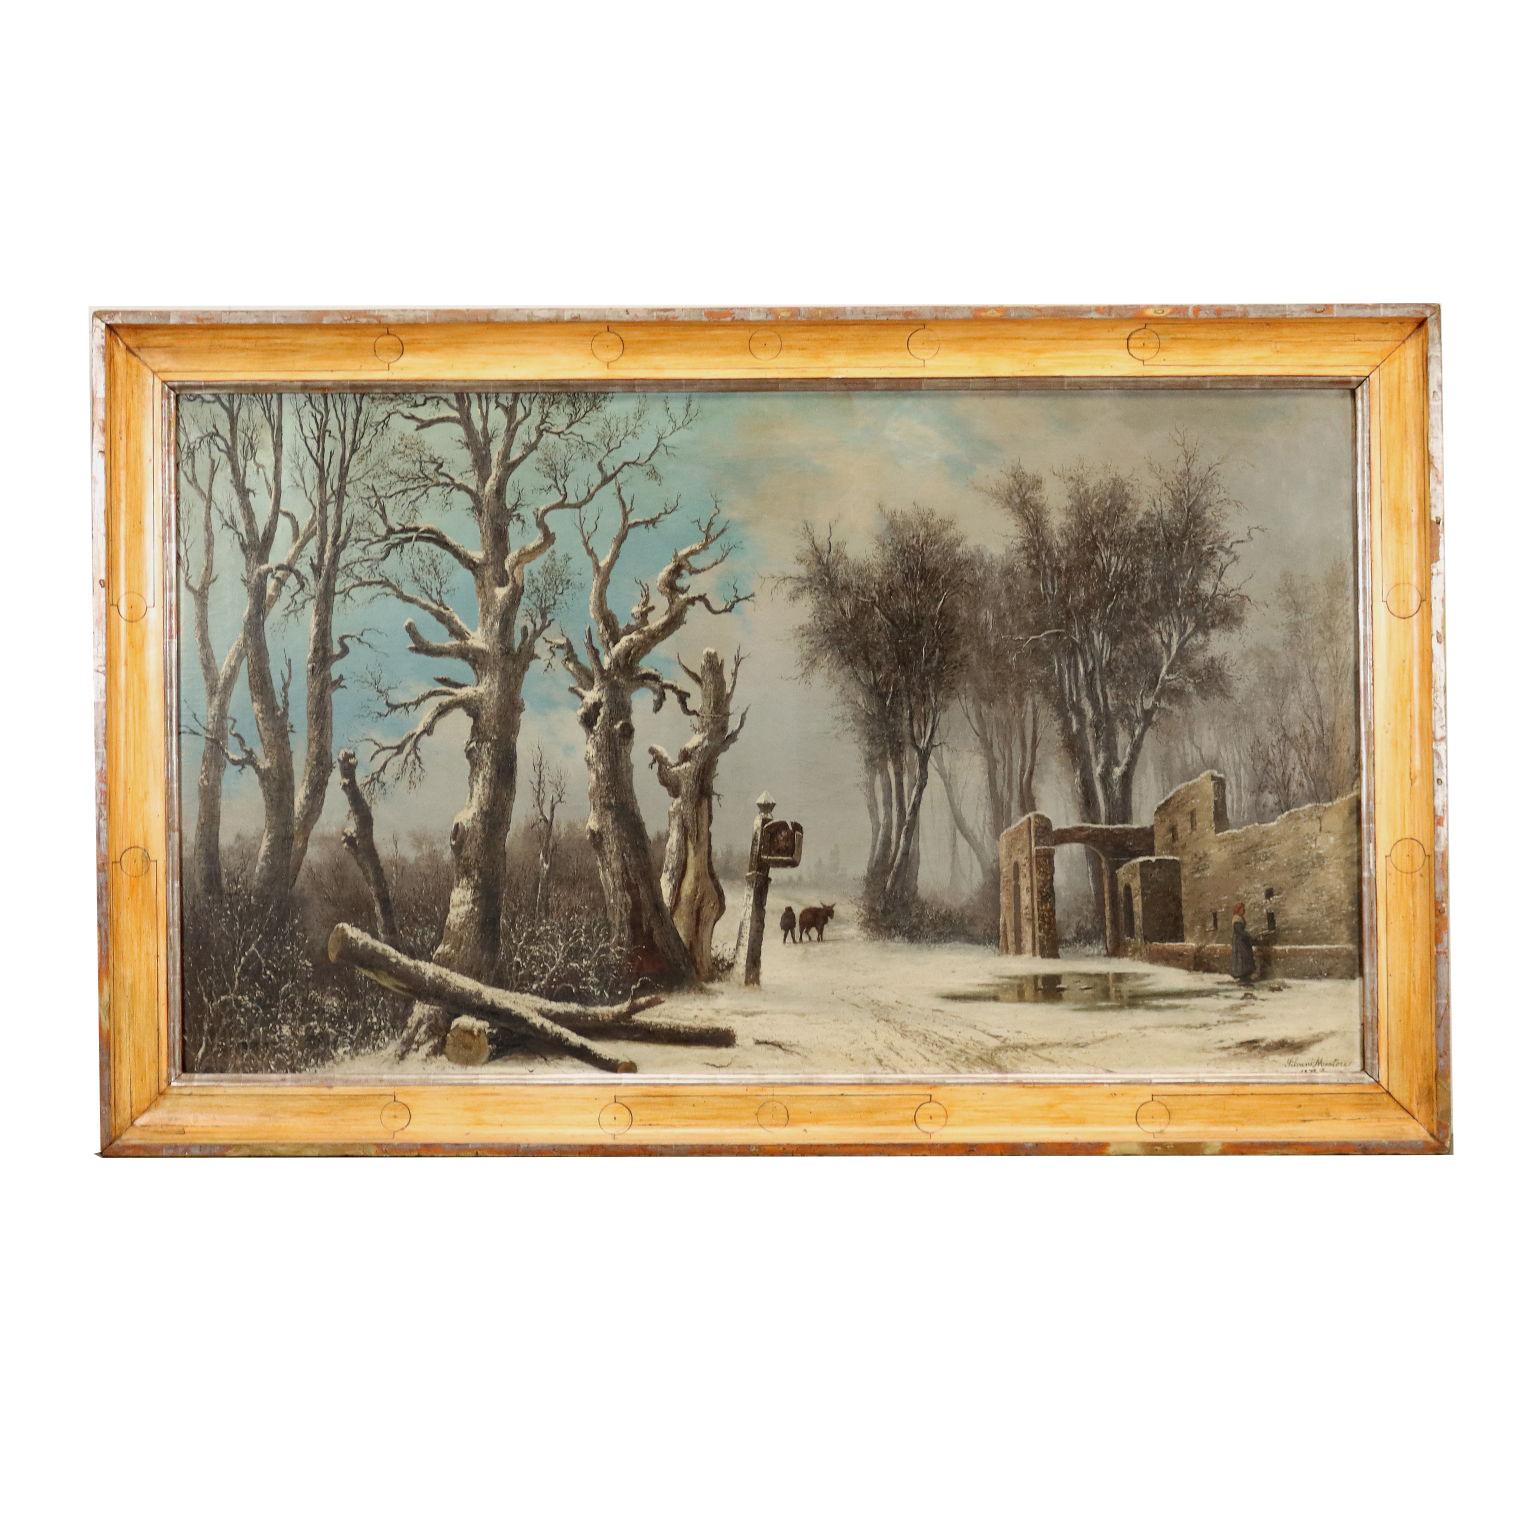 Landscape Painting Mentore Silvani - Paysage enneigé avec personnages, 1872